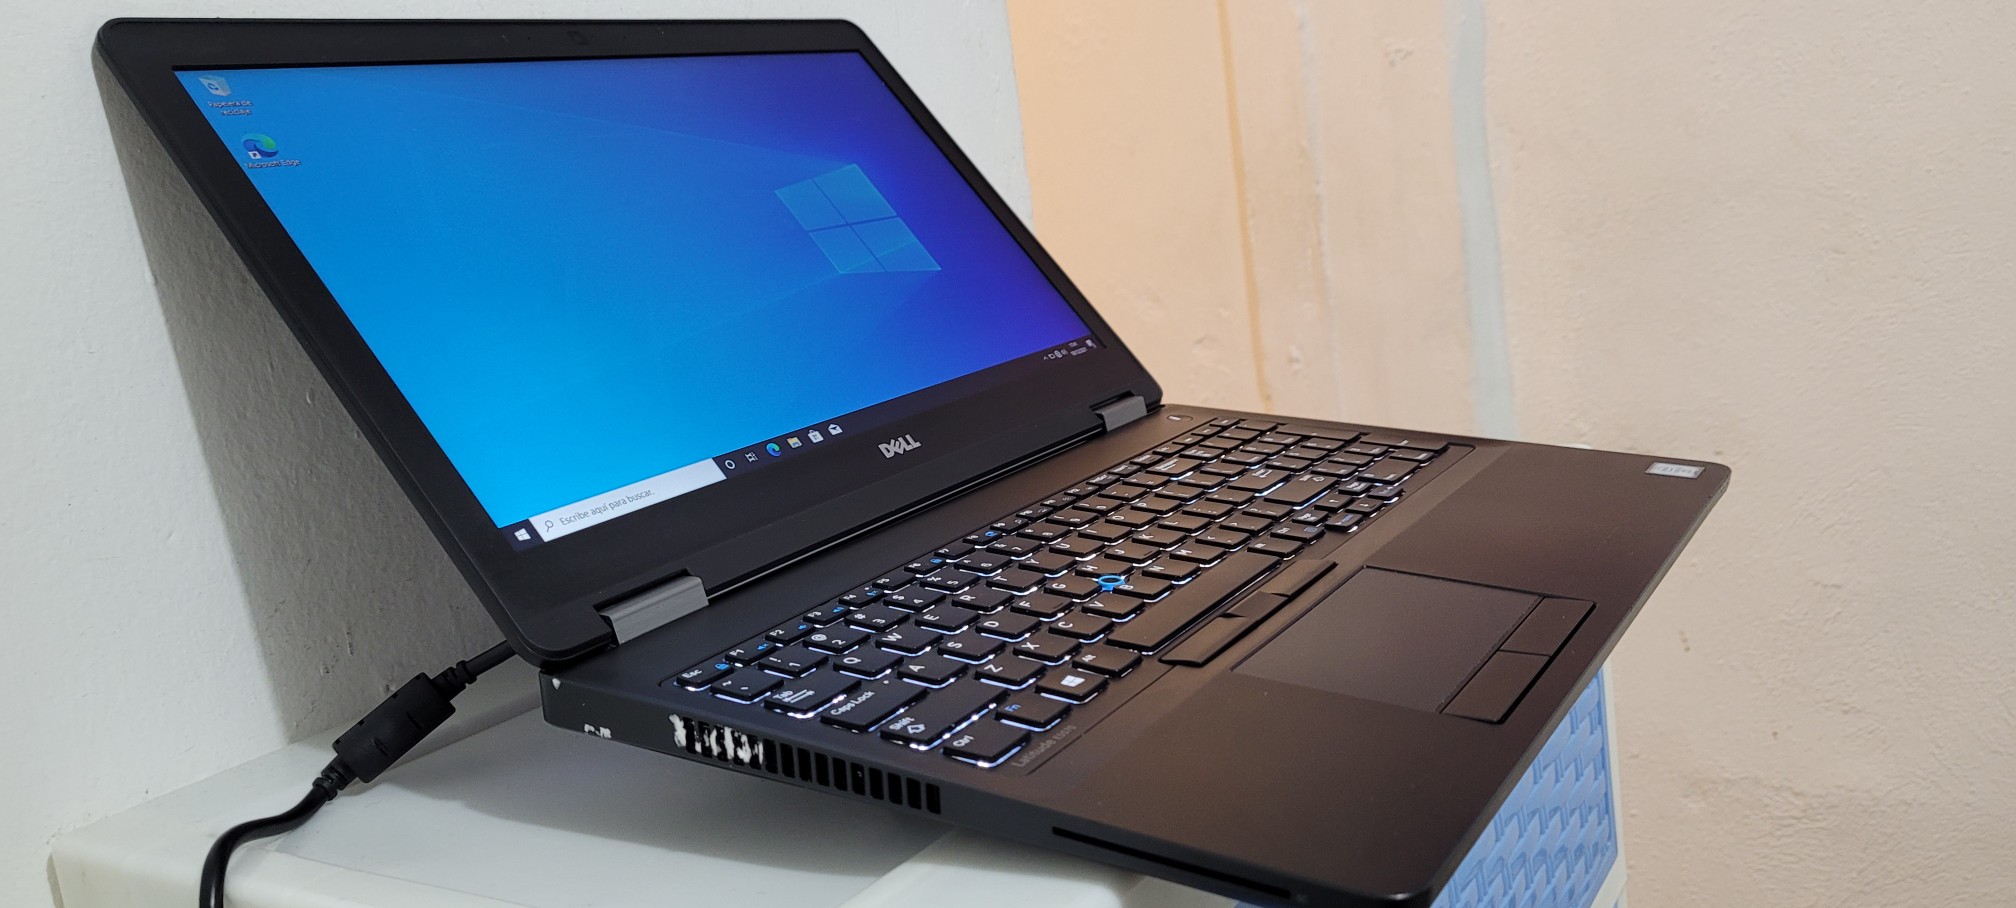 computadoras y laptops - Dell 5590 17 Pulg Core i5 8va Gen Ram 16gb ddr4 Disco 512gb SSD Solido 1080p 1